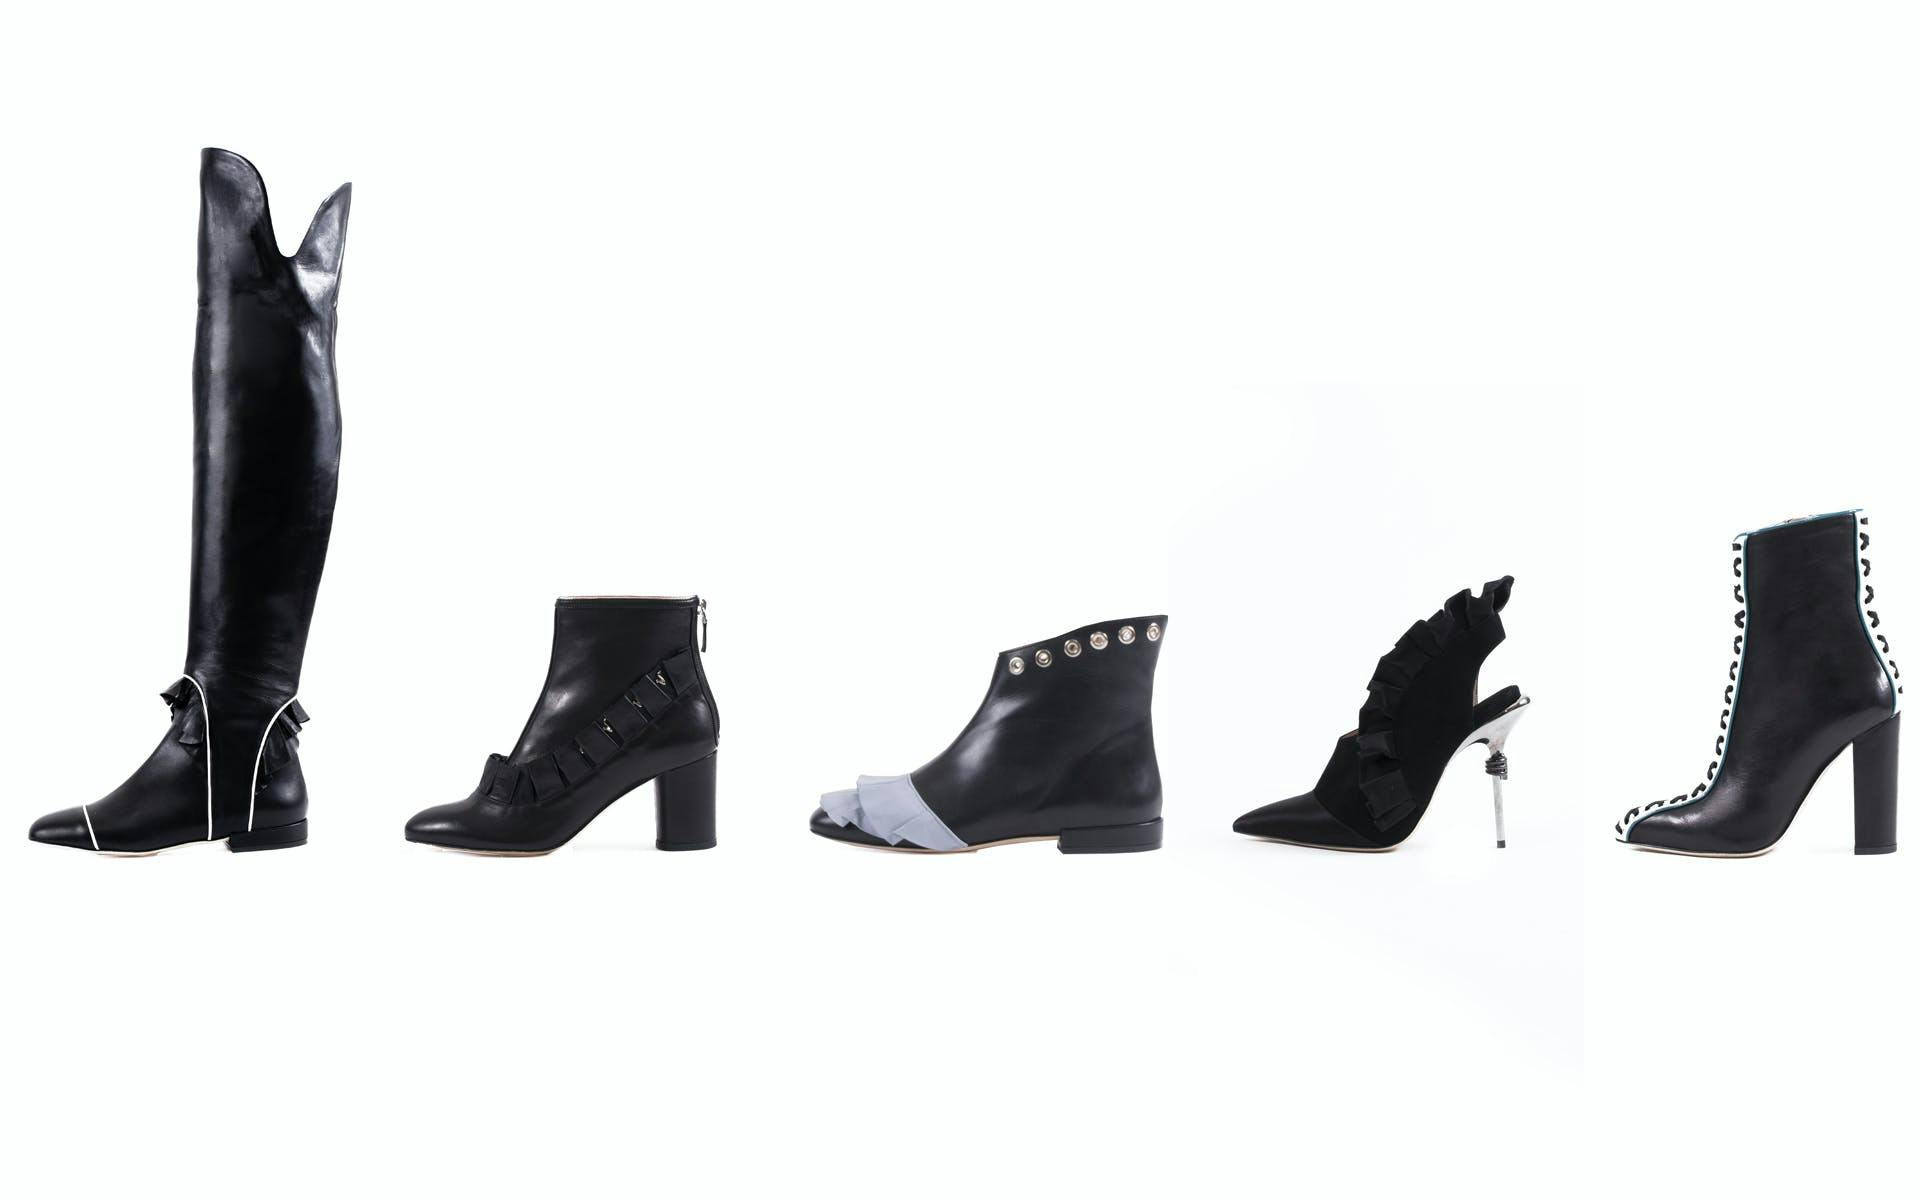 clothing apparel footwear heel shoe high heel